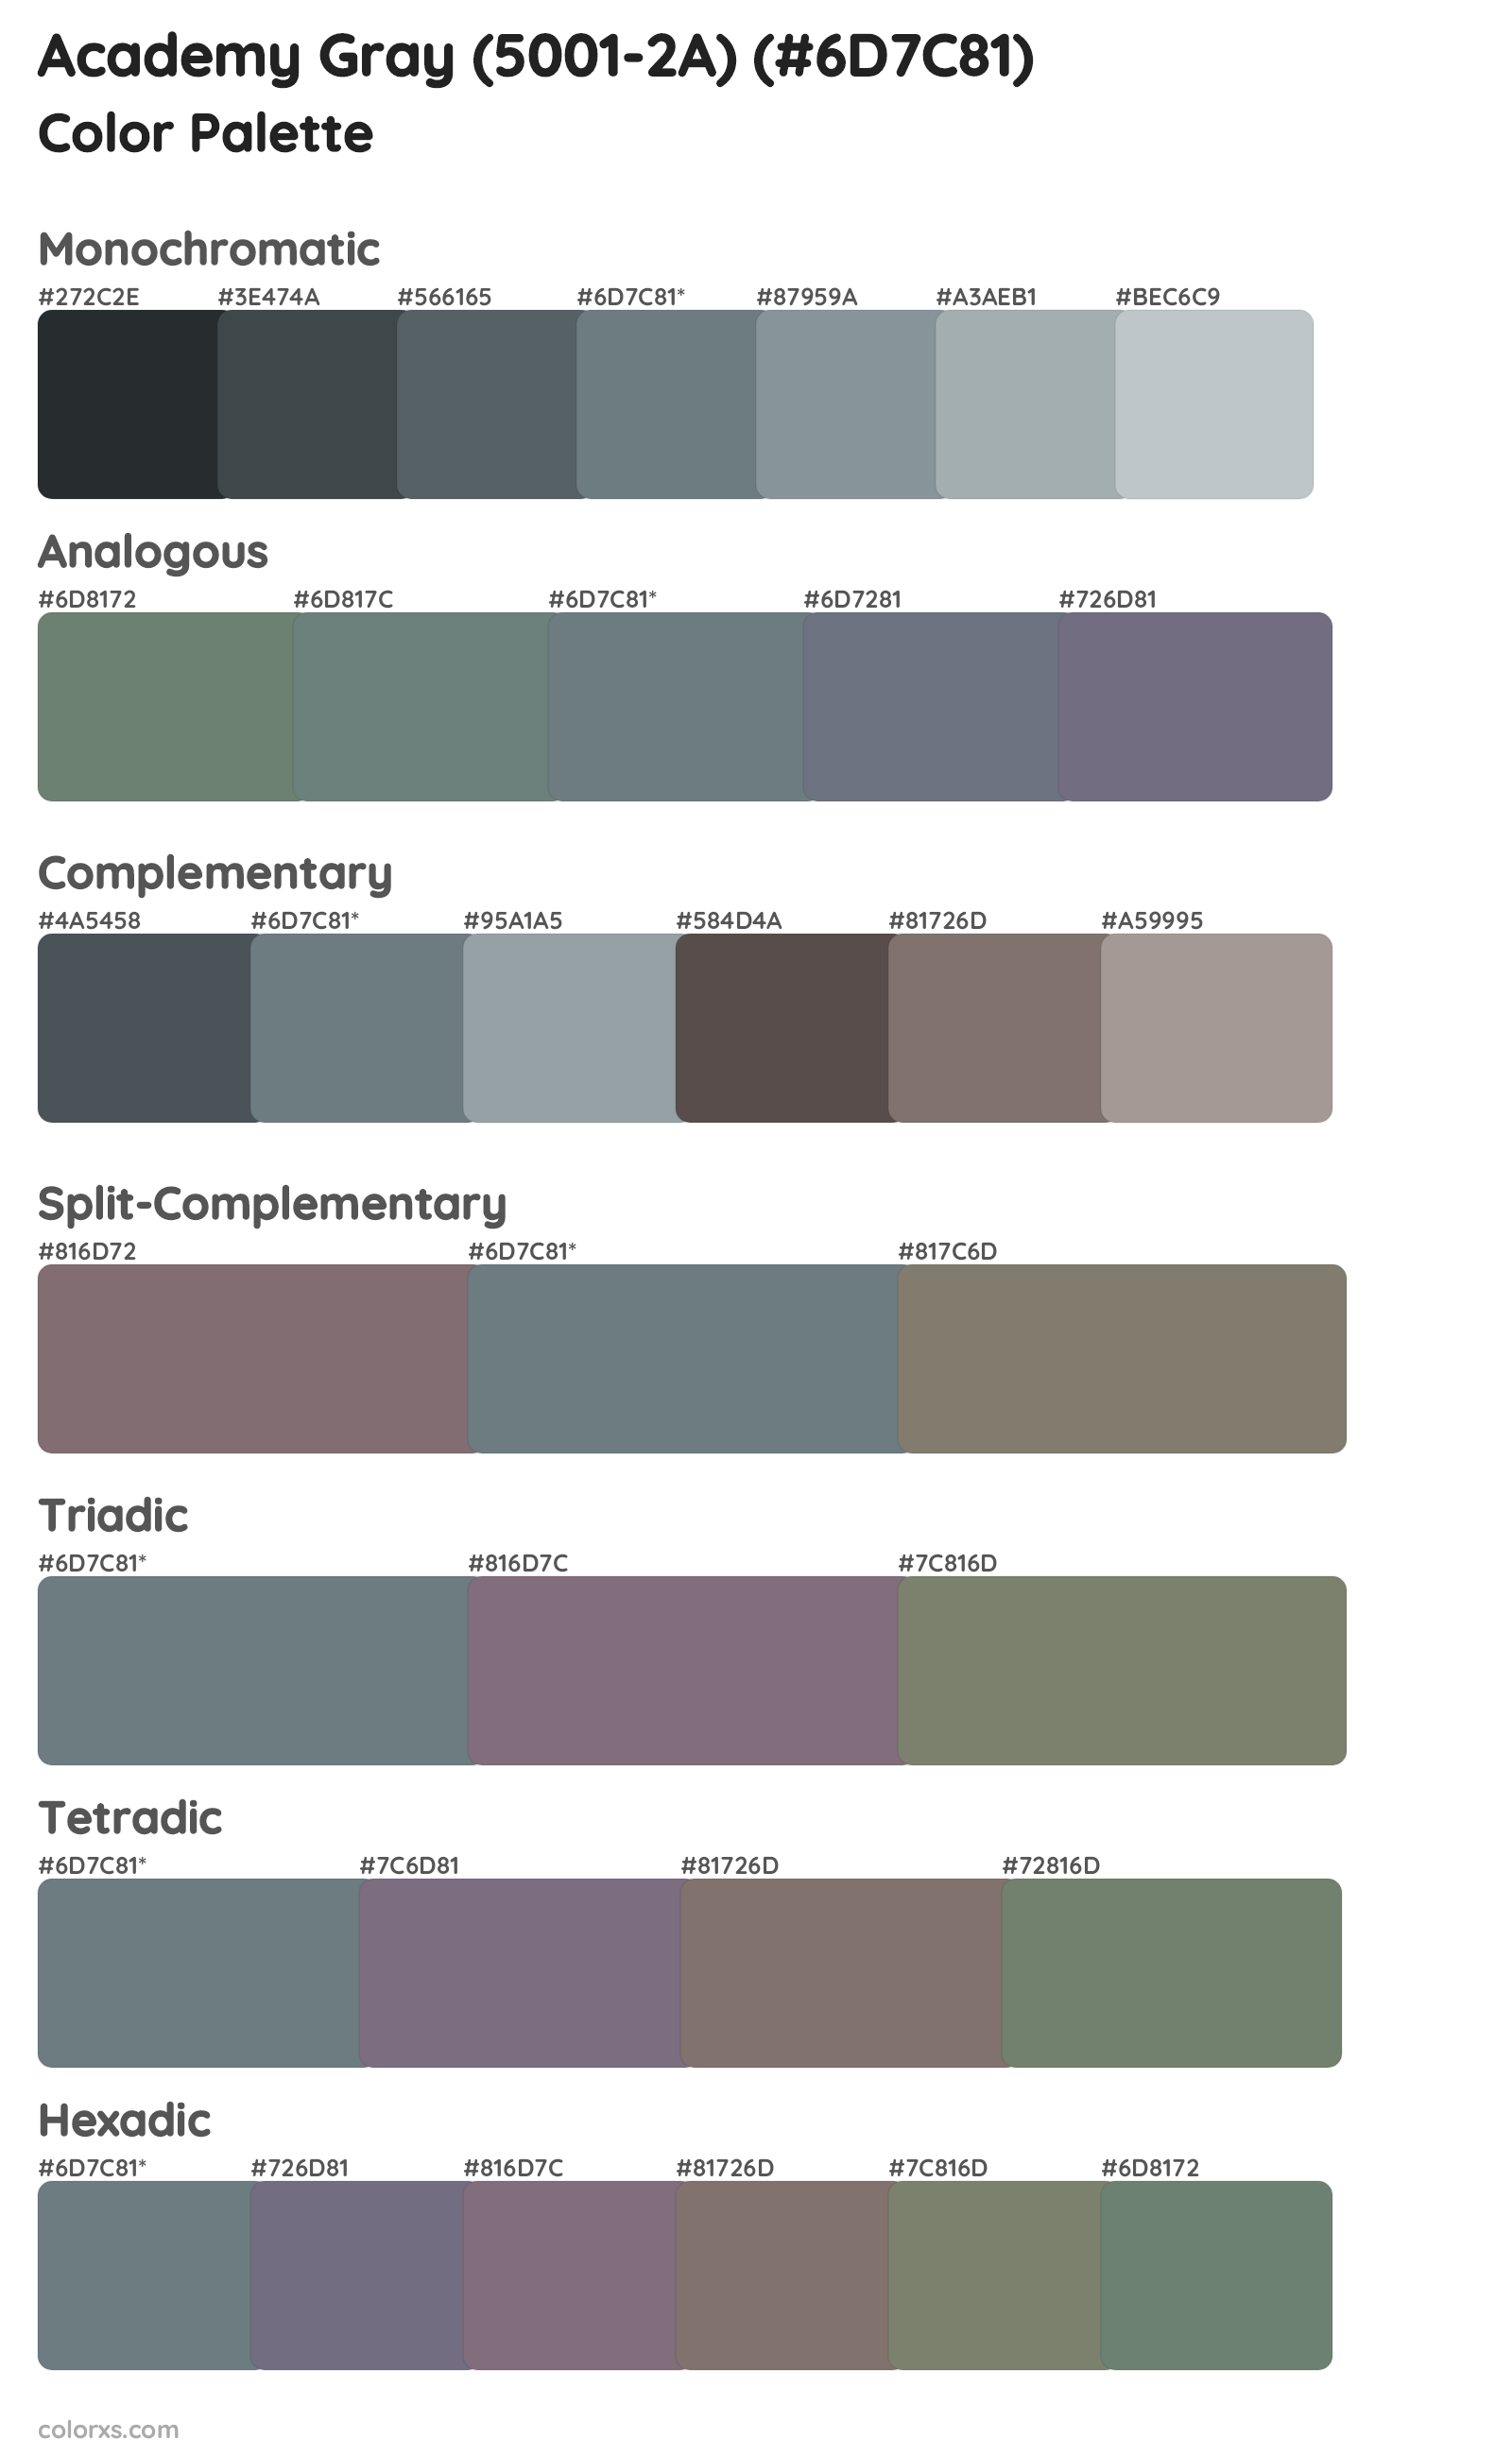 Academy Gray (5001-2A) Color Scheme Palettes